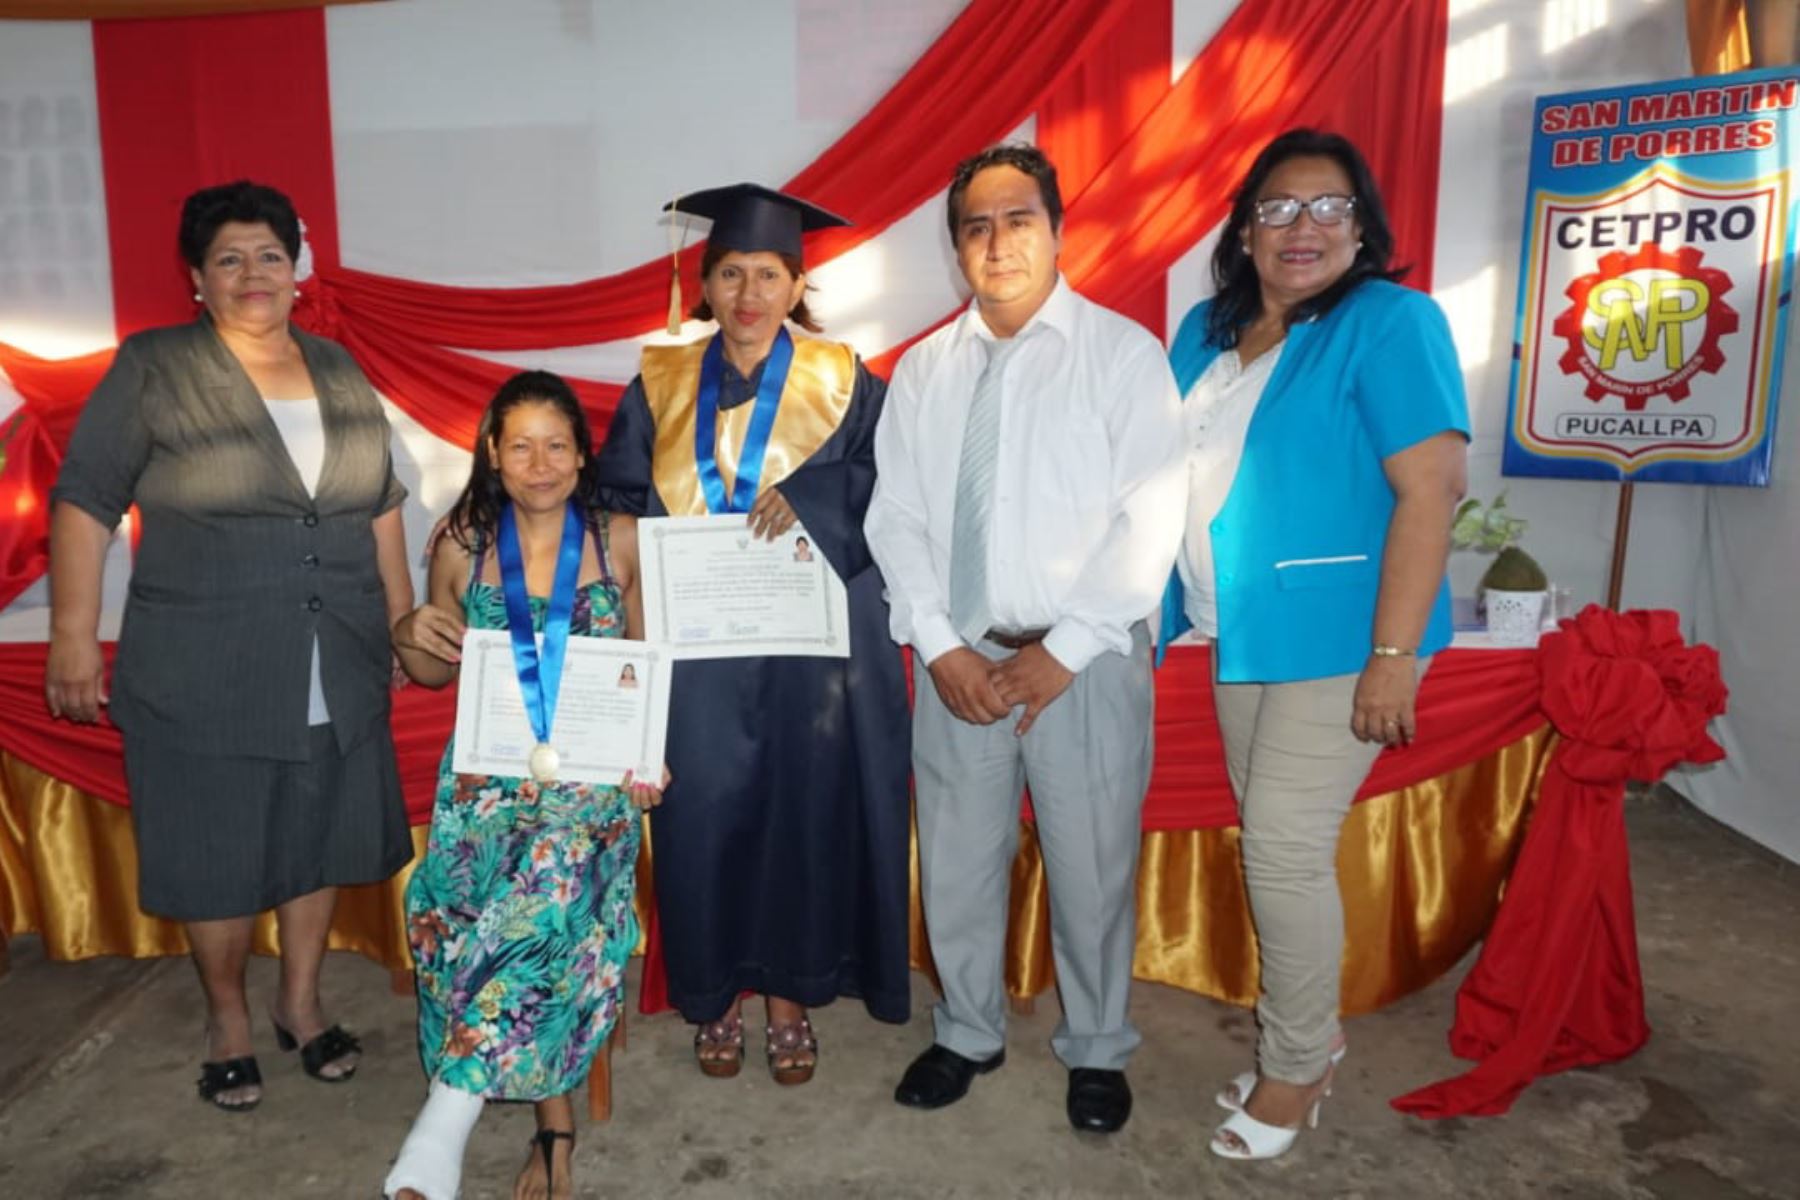 Sector Educación entrega títulos a egresados de Cetpro de Pucallpa, en Ucayali. ANDINA/Difusión